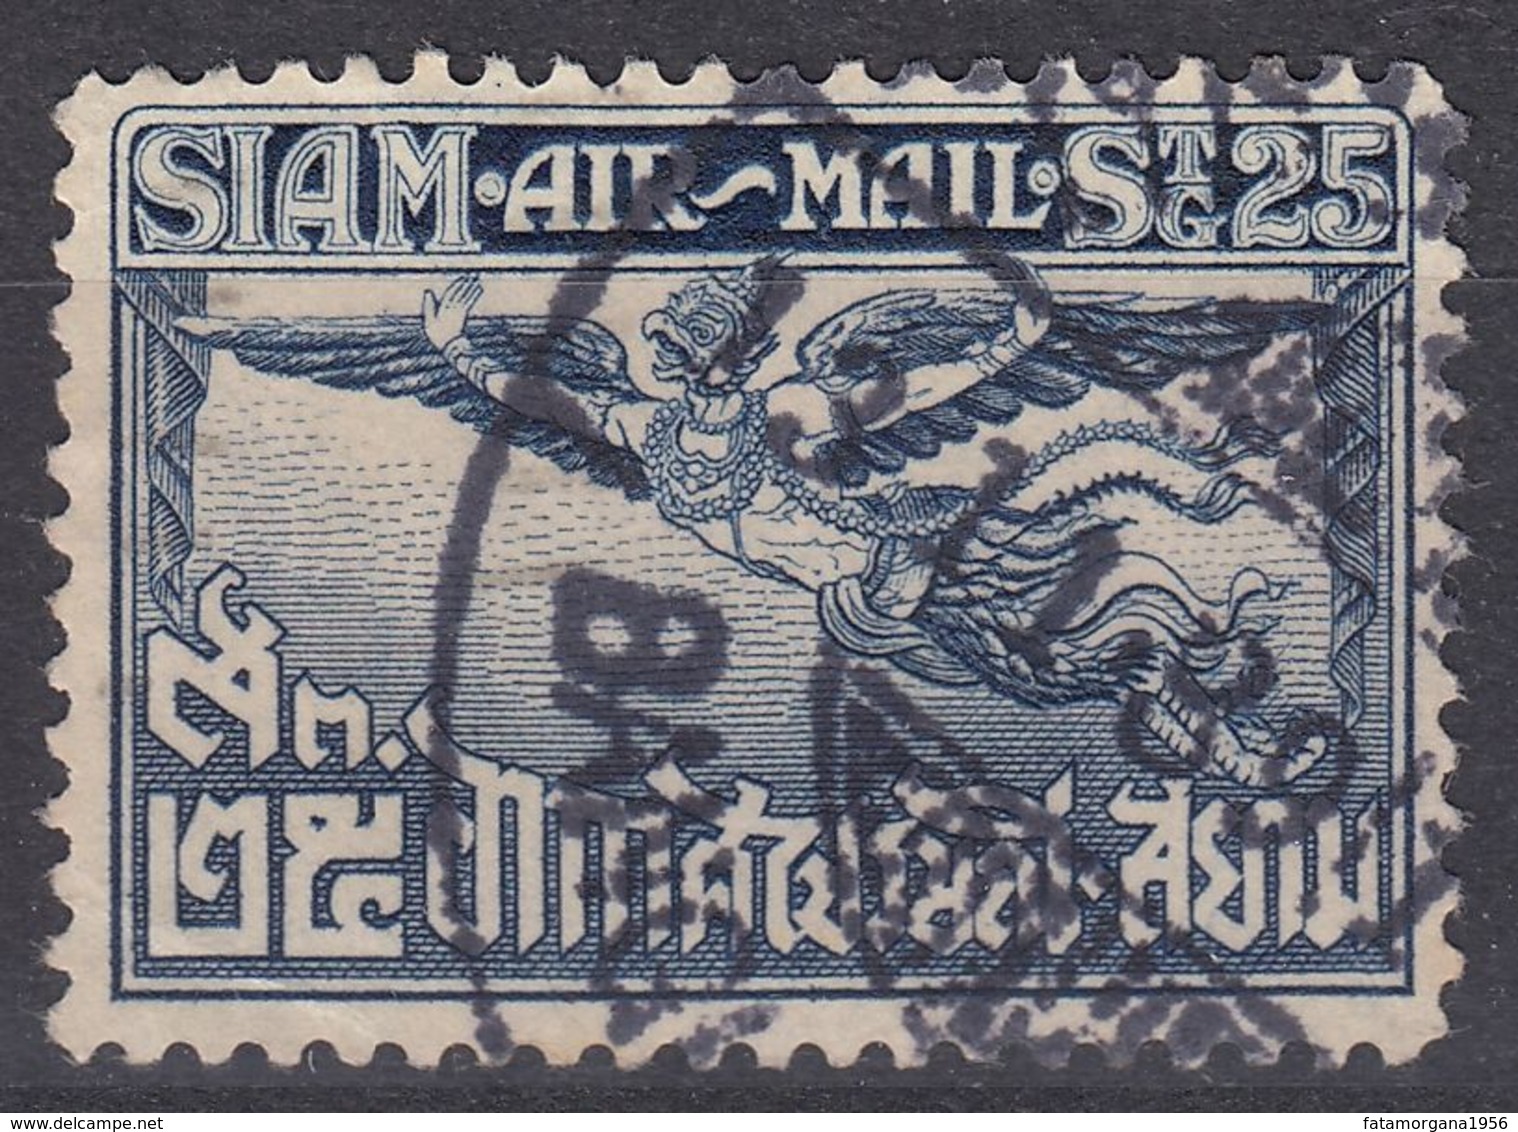 SIAM - 1925 - Posta Aerea Yvert 6 Obliterato, Come Da Immagine. - Siam